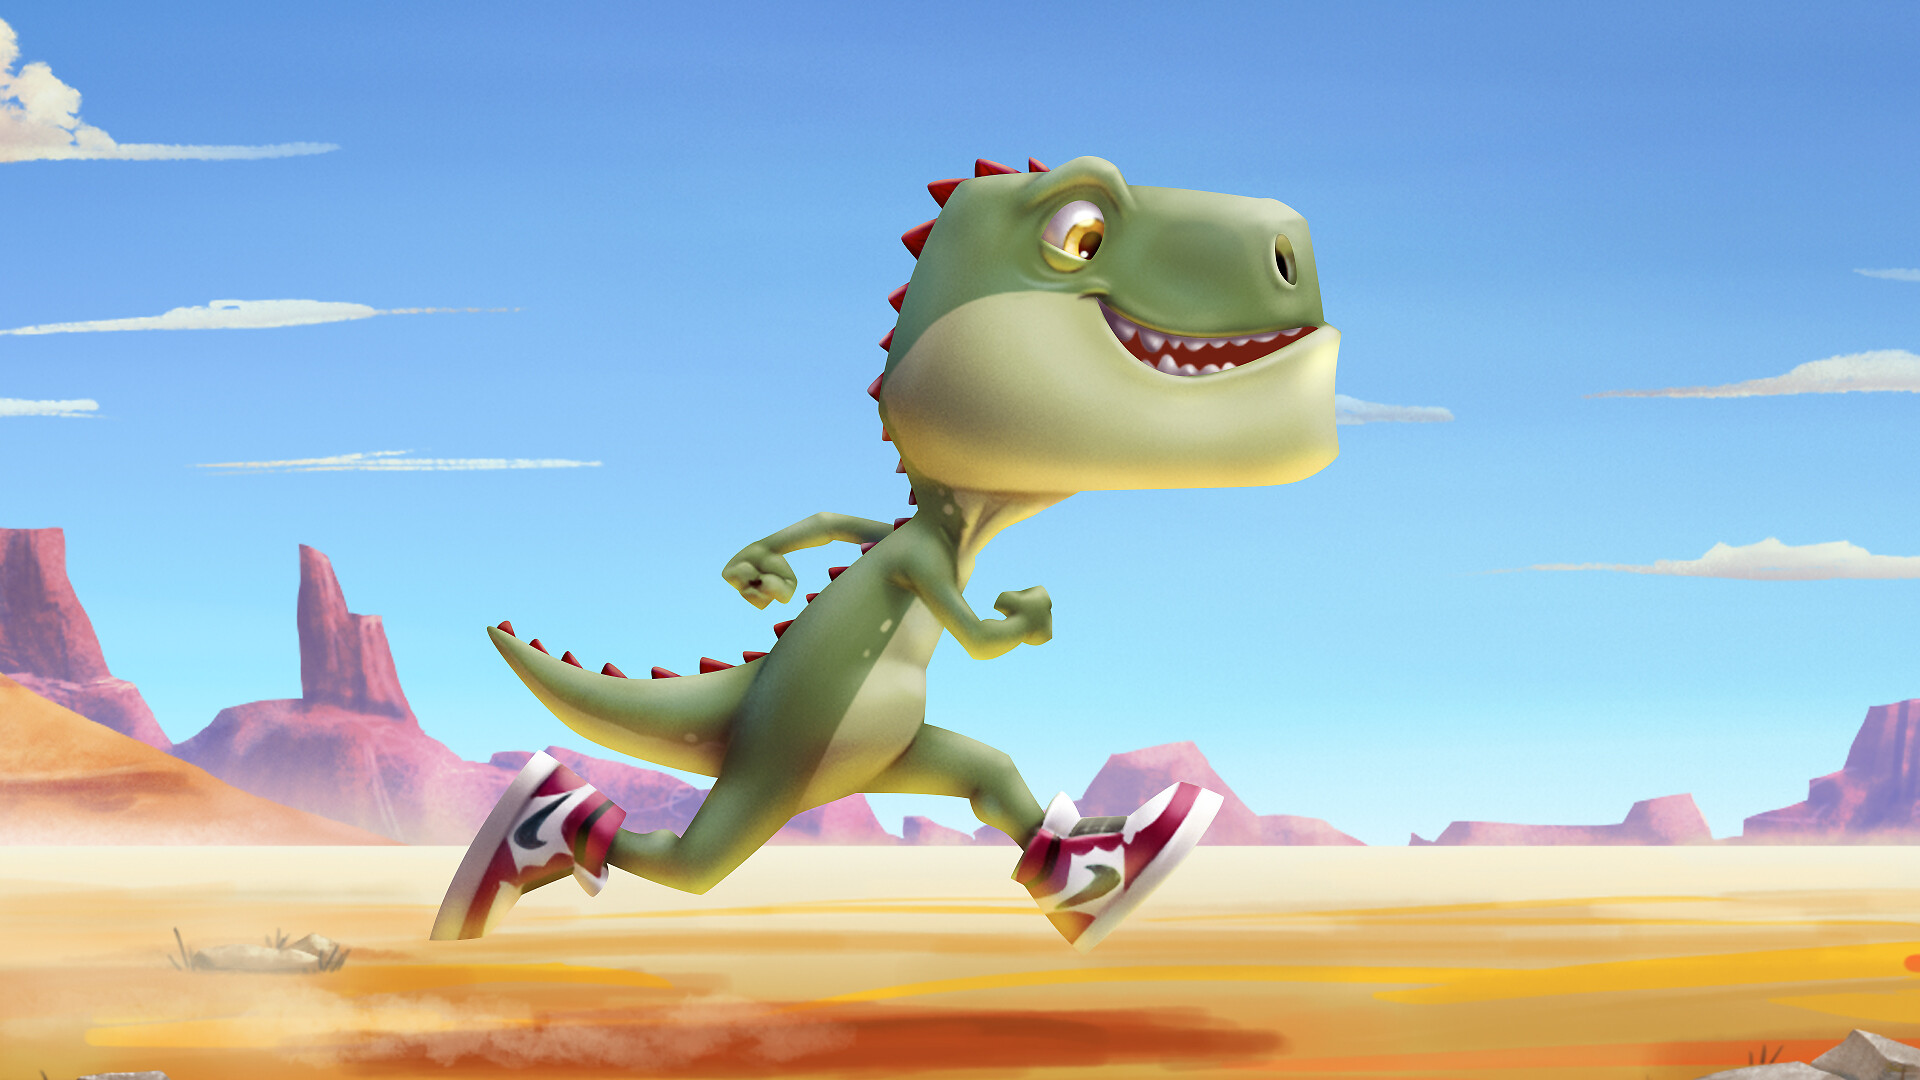 ArtStation - Running Dinosaur Animated